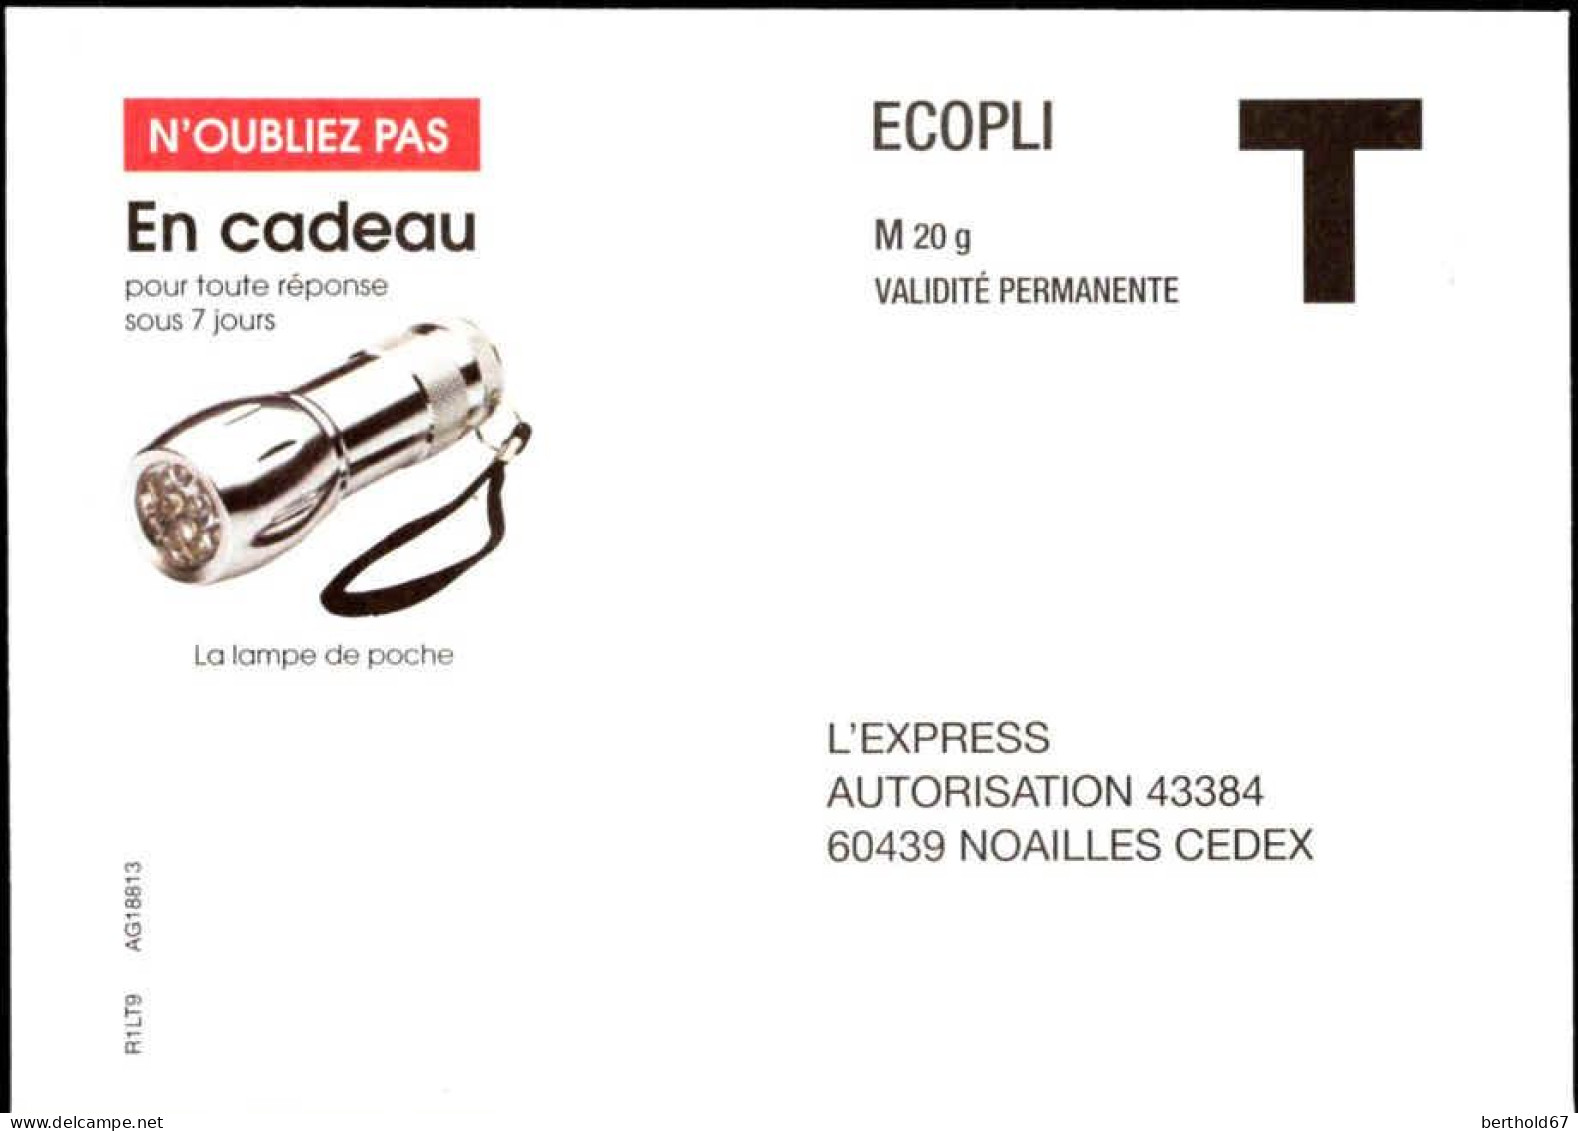 France Entier-P N** (7017) L'Express Autorisation 43384 Ecopli M20g V.permanente - Karten/Antwortumschläge T